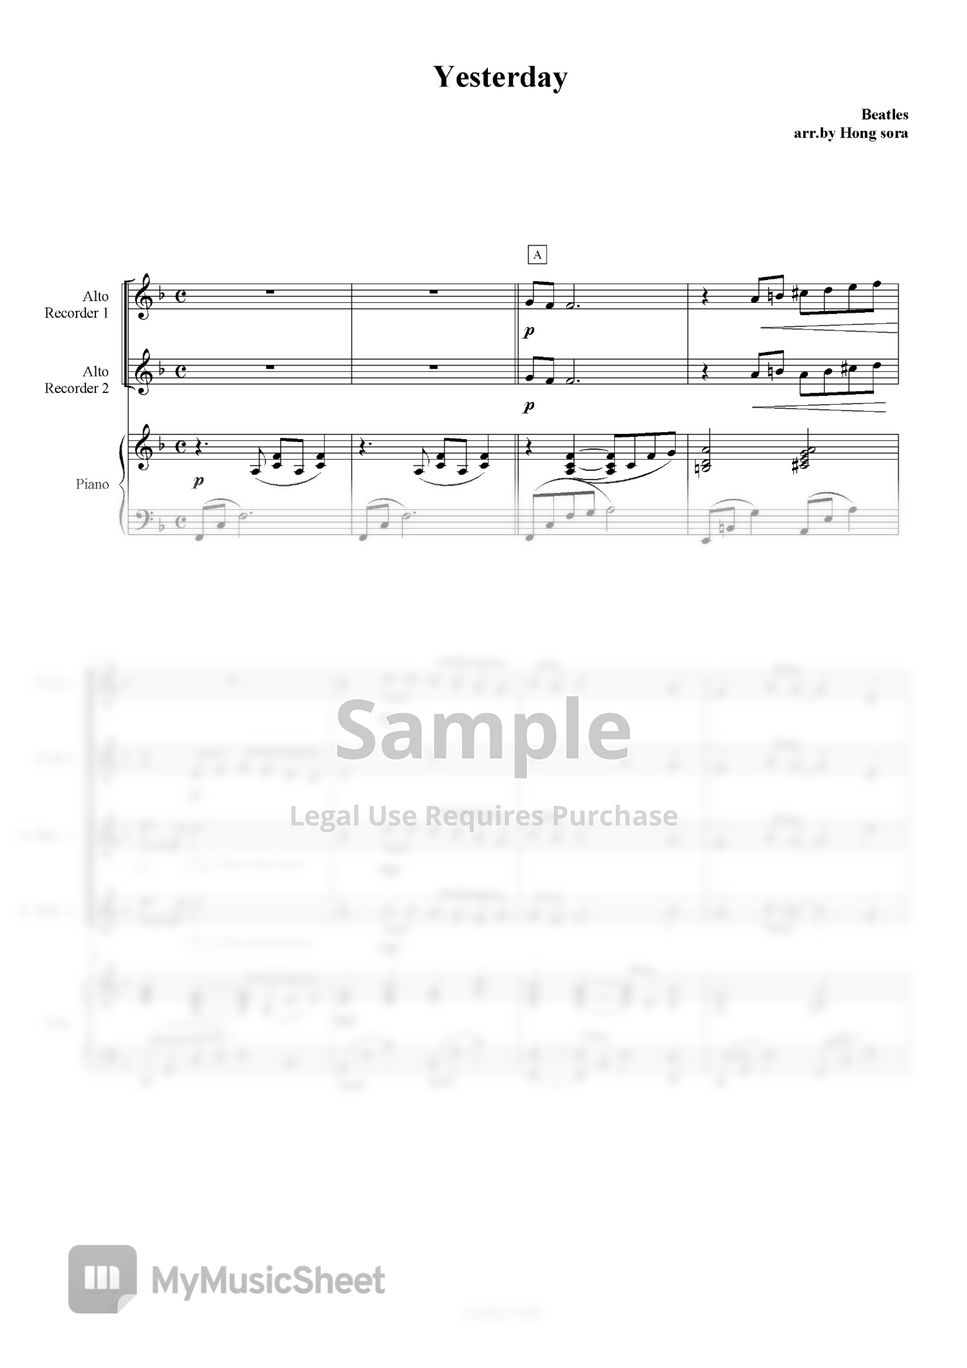 비틀즈(Beatles) - Yesterday 합주(리코더1,2,알토리코더1,2피페1,2,피아노) by soraHong